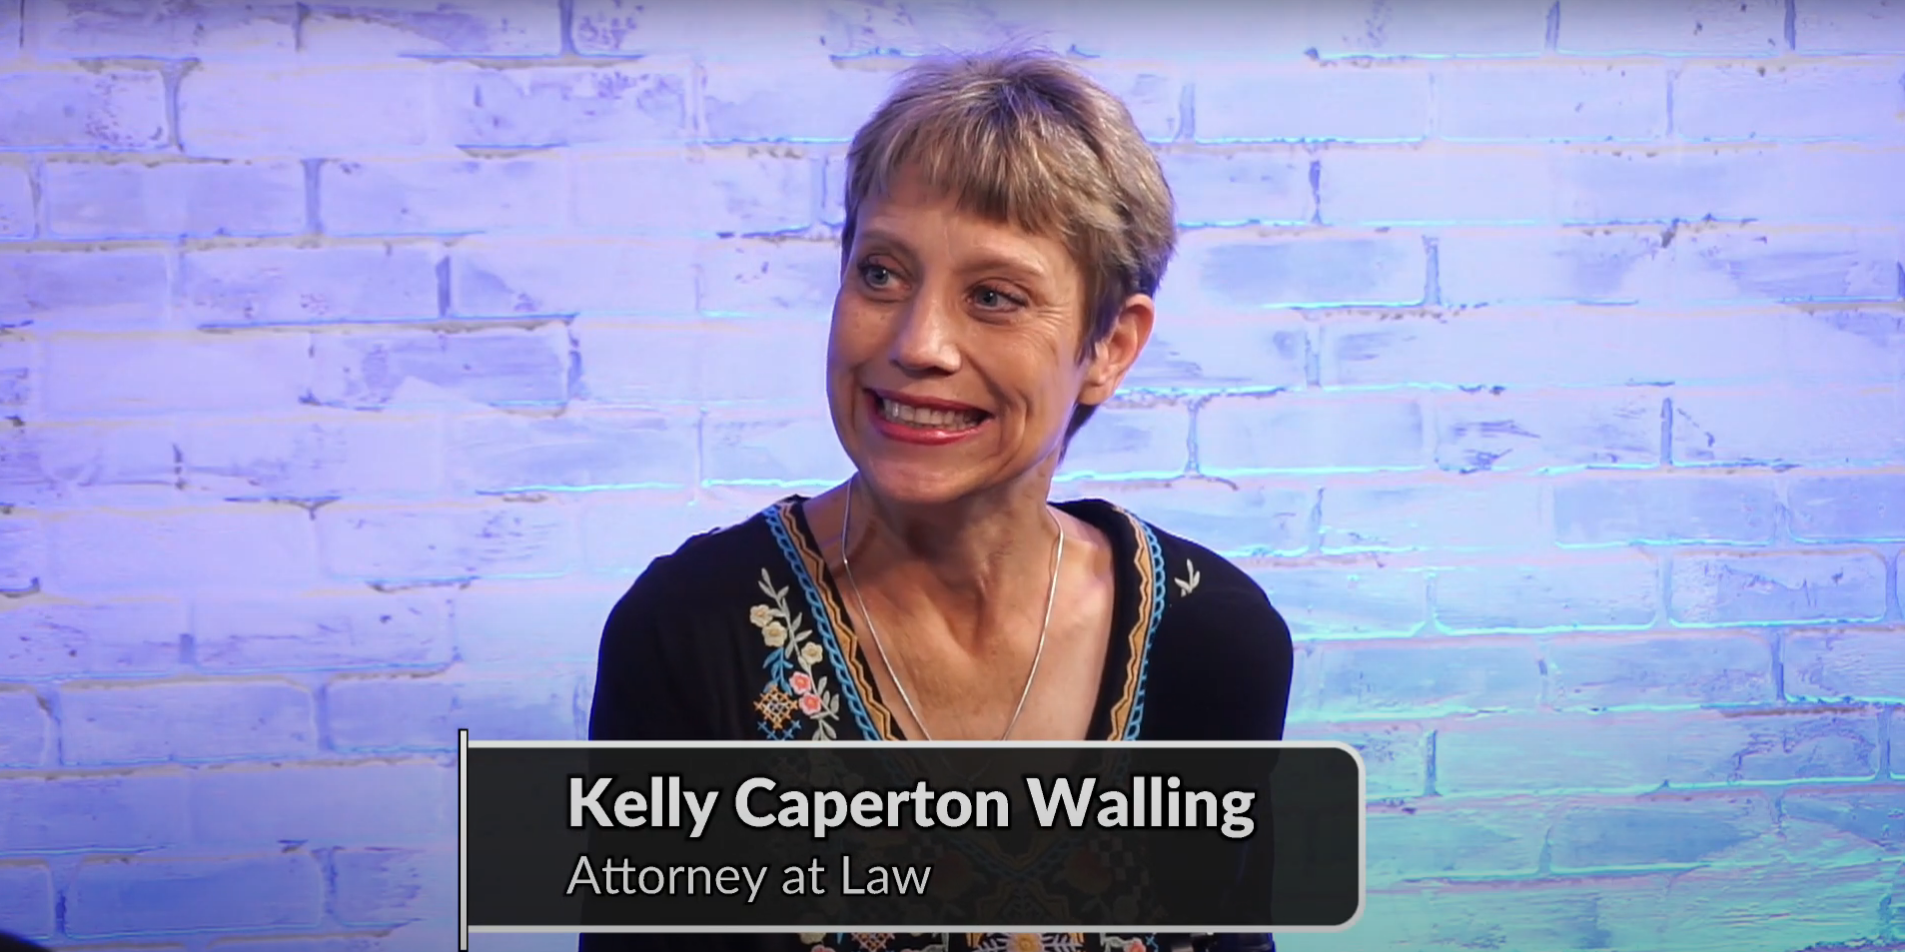 Kelly Caperton Walling